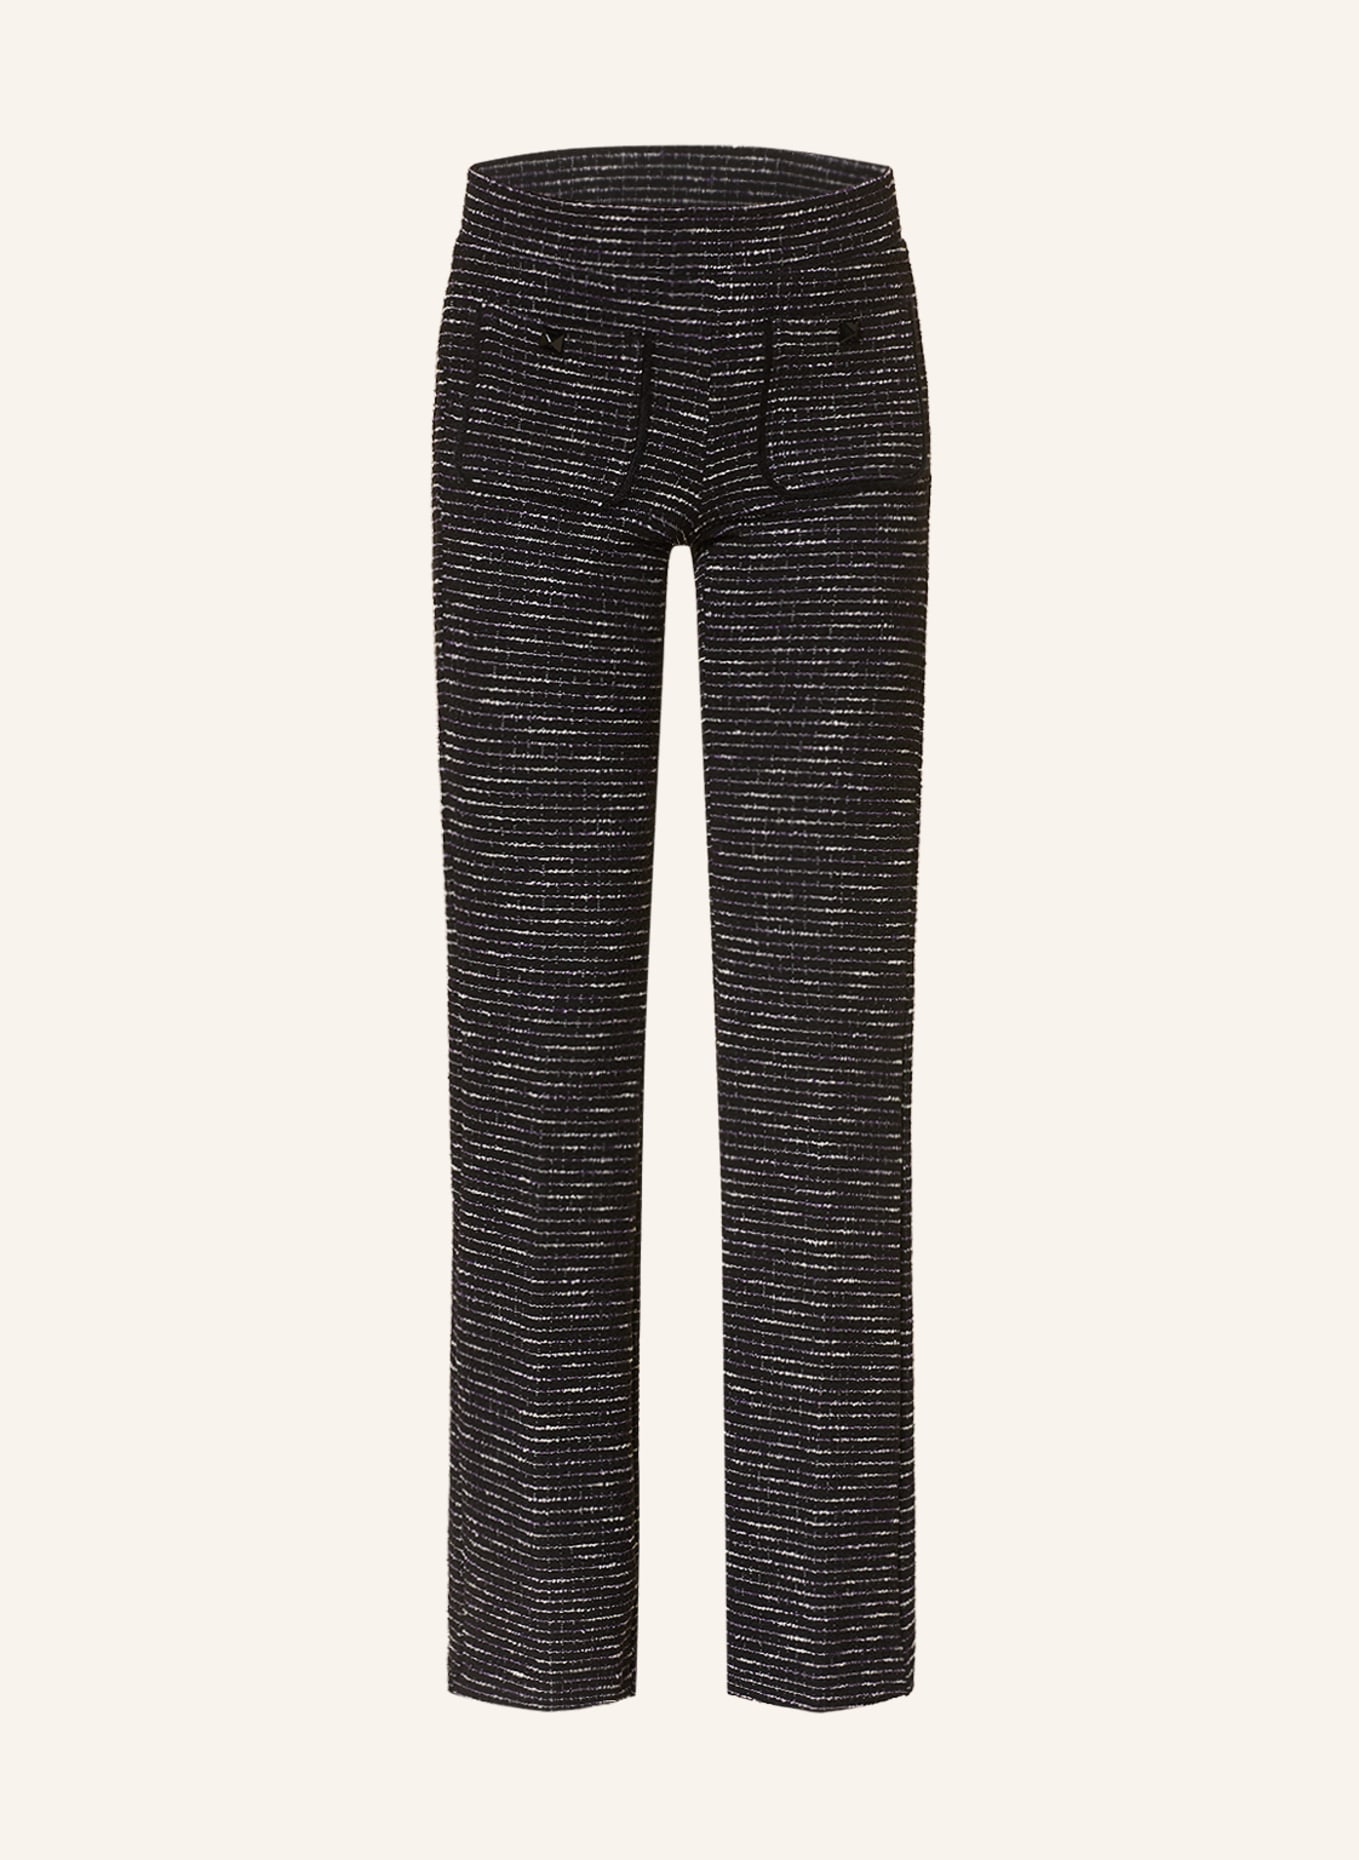 Vintage Style 1930s 1940s Herringbone Tweed Trousers, Mens Trousers for  Women, High Waisted Pants Brown Wool Tweed - Etsy Sweden